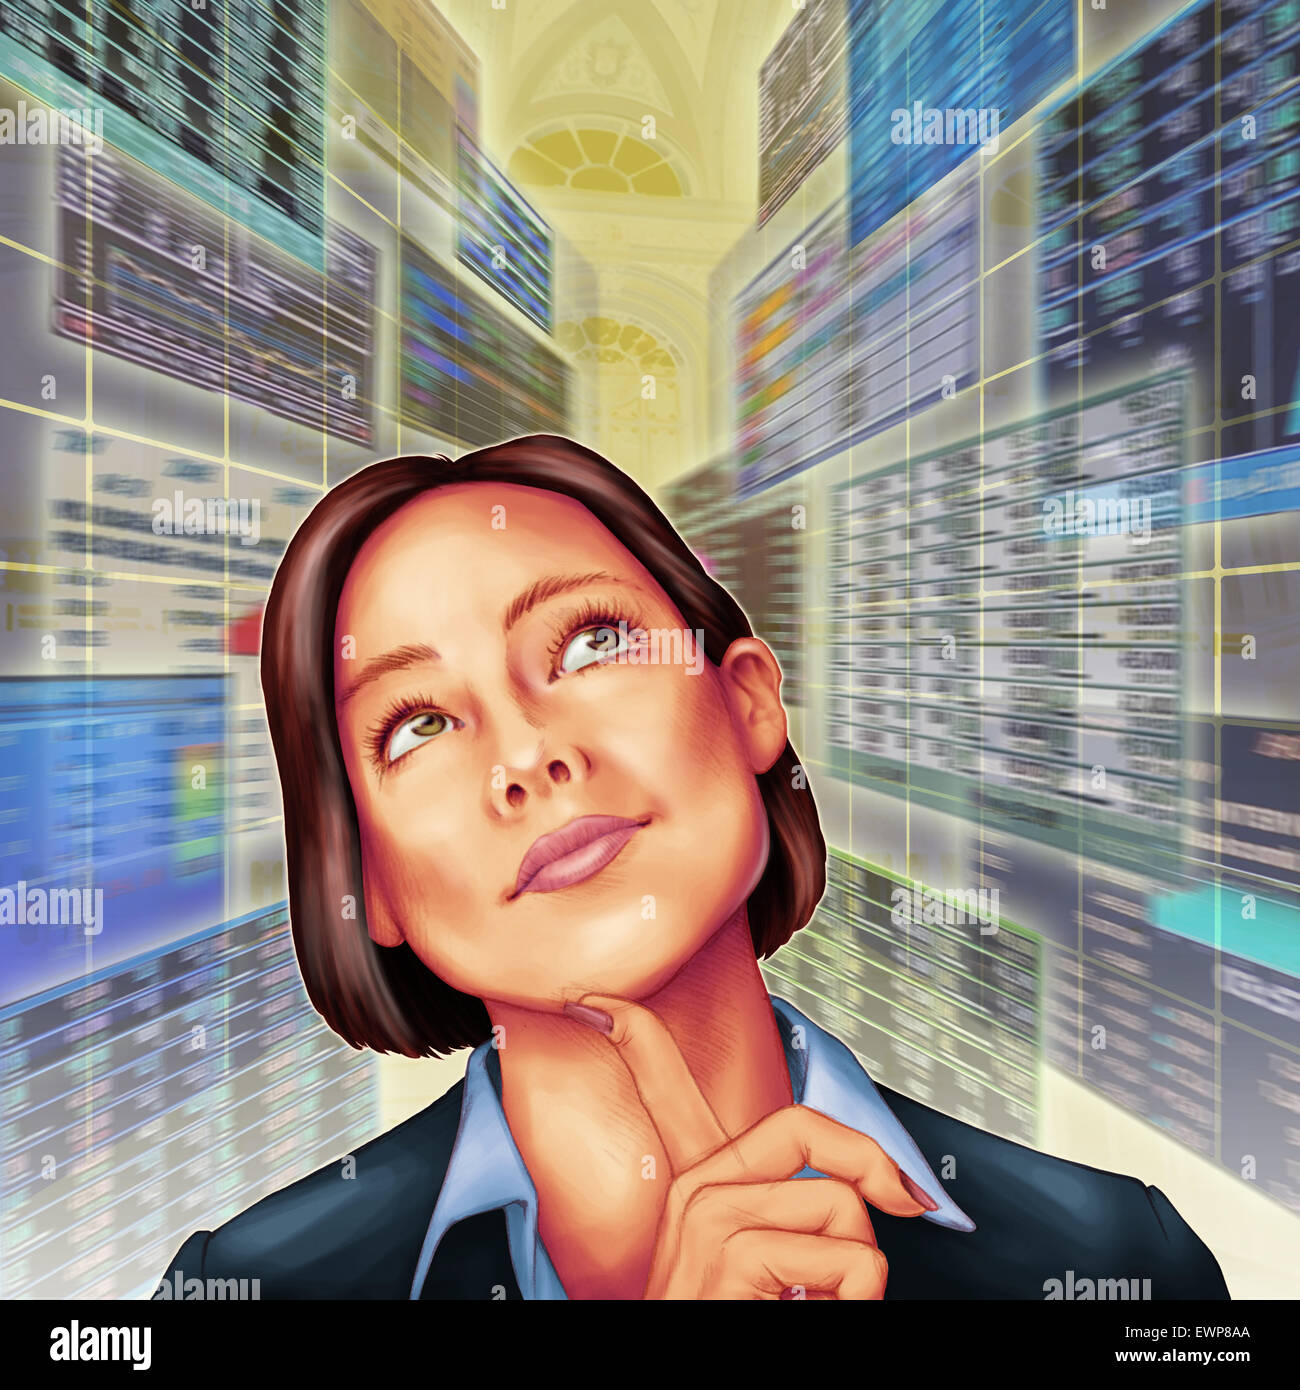 Image d'illustration de businessman day Dreaming in server room Banque D'Images